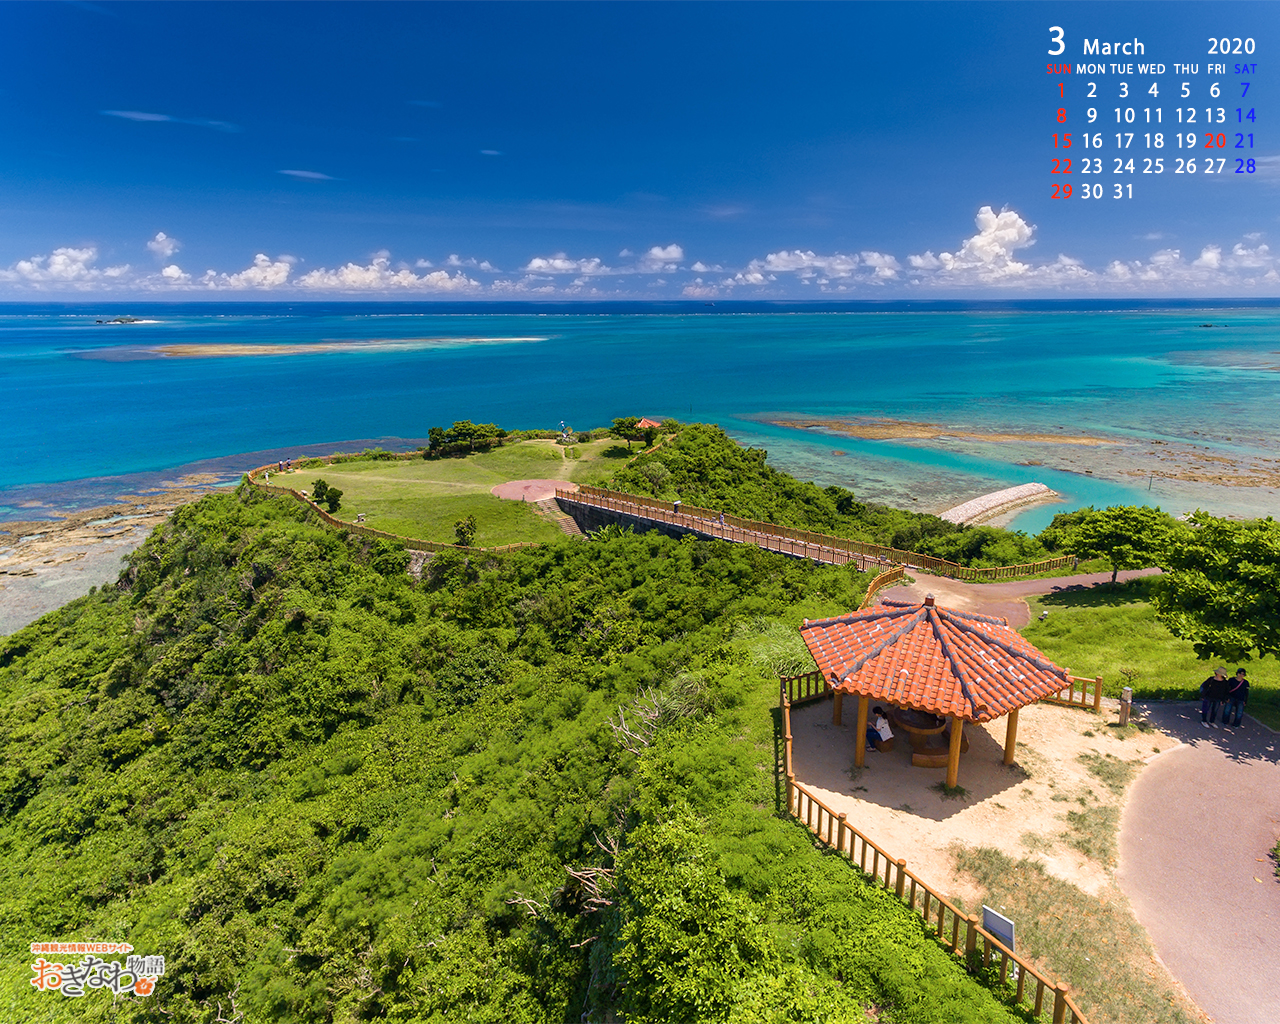 3月の壁紙カレンダー お知らせ トピックス 沖縄観光情報webサイト おきなわ物語